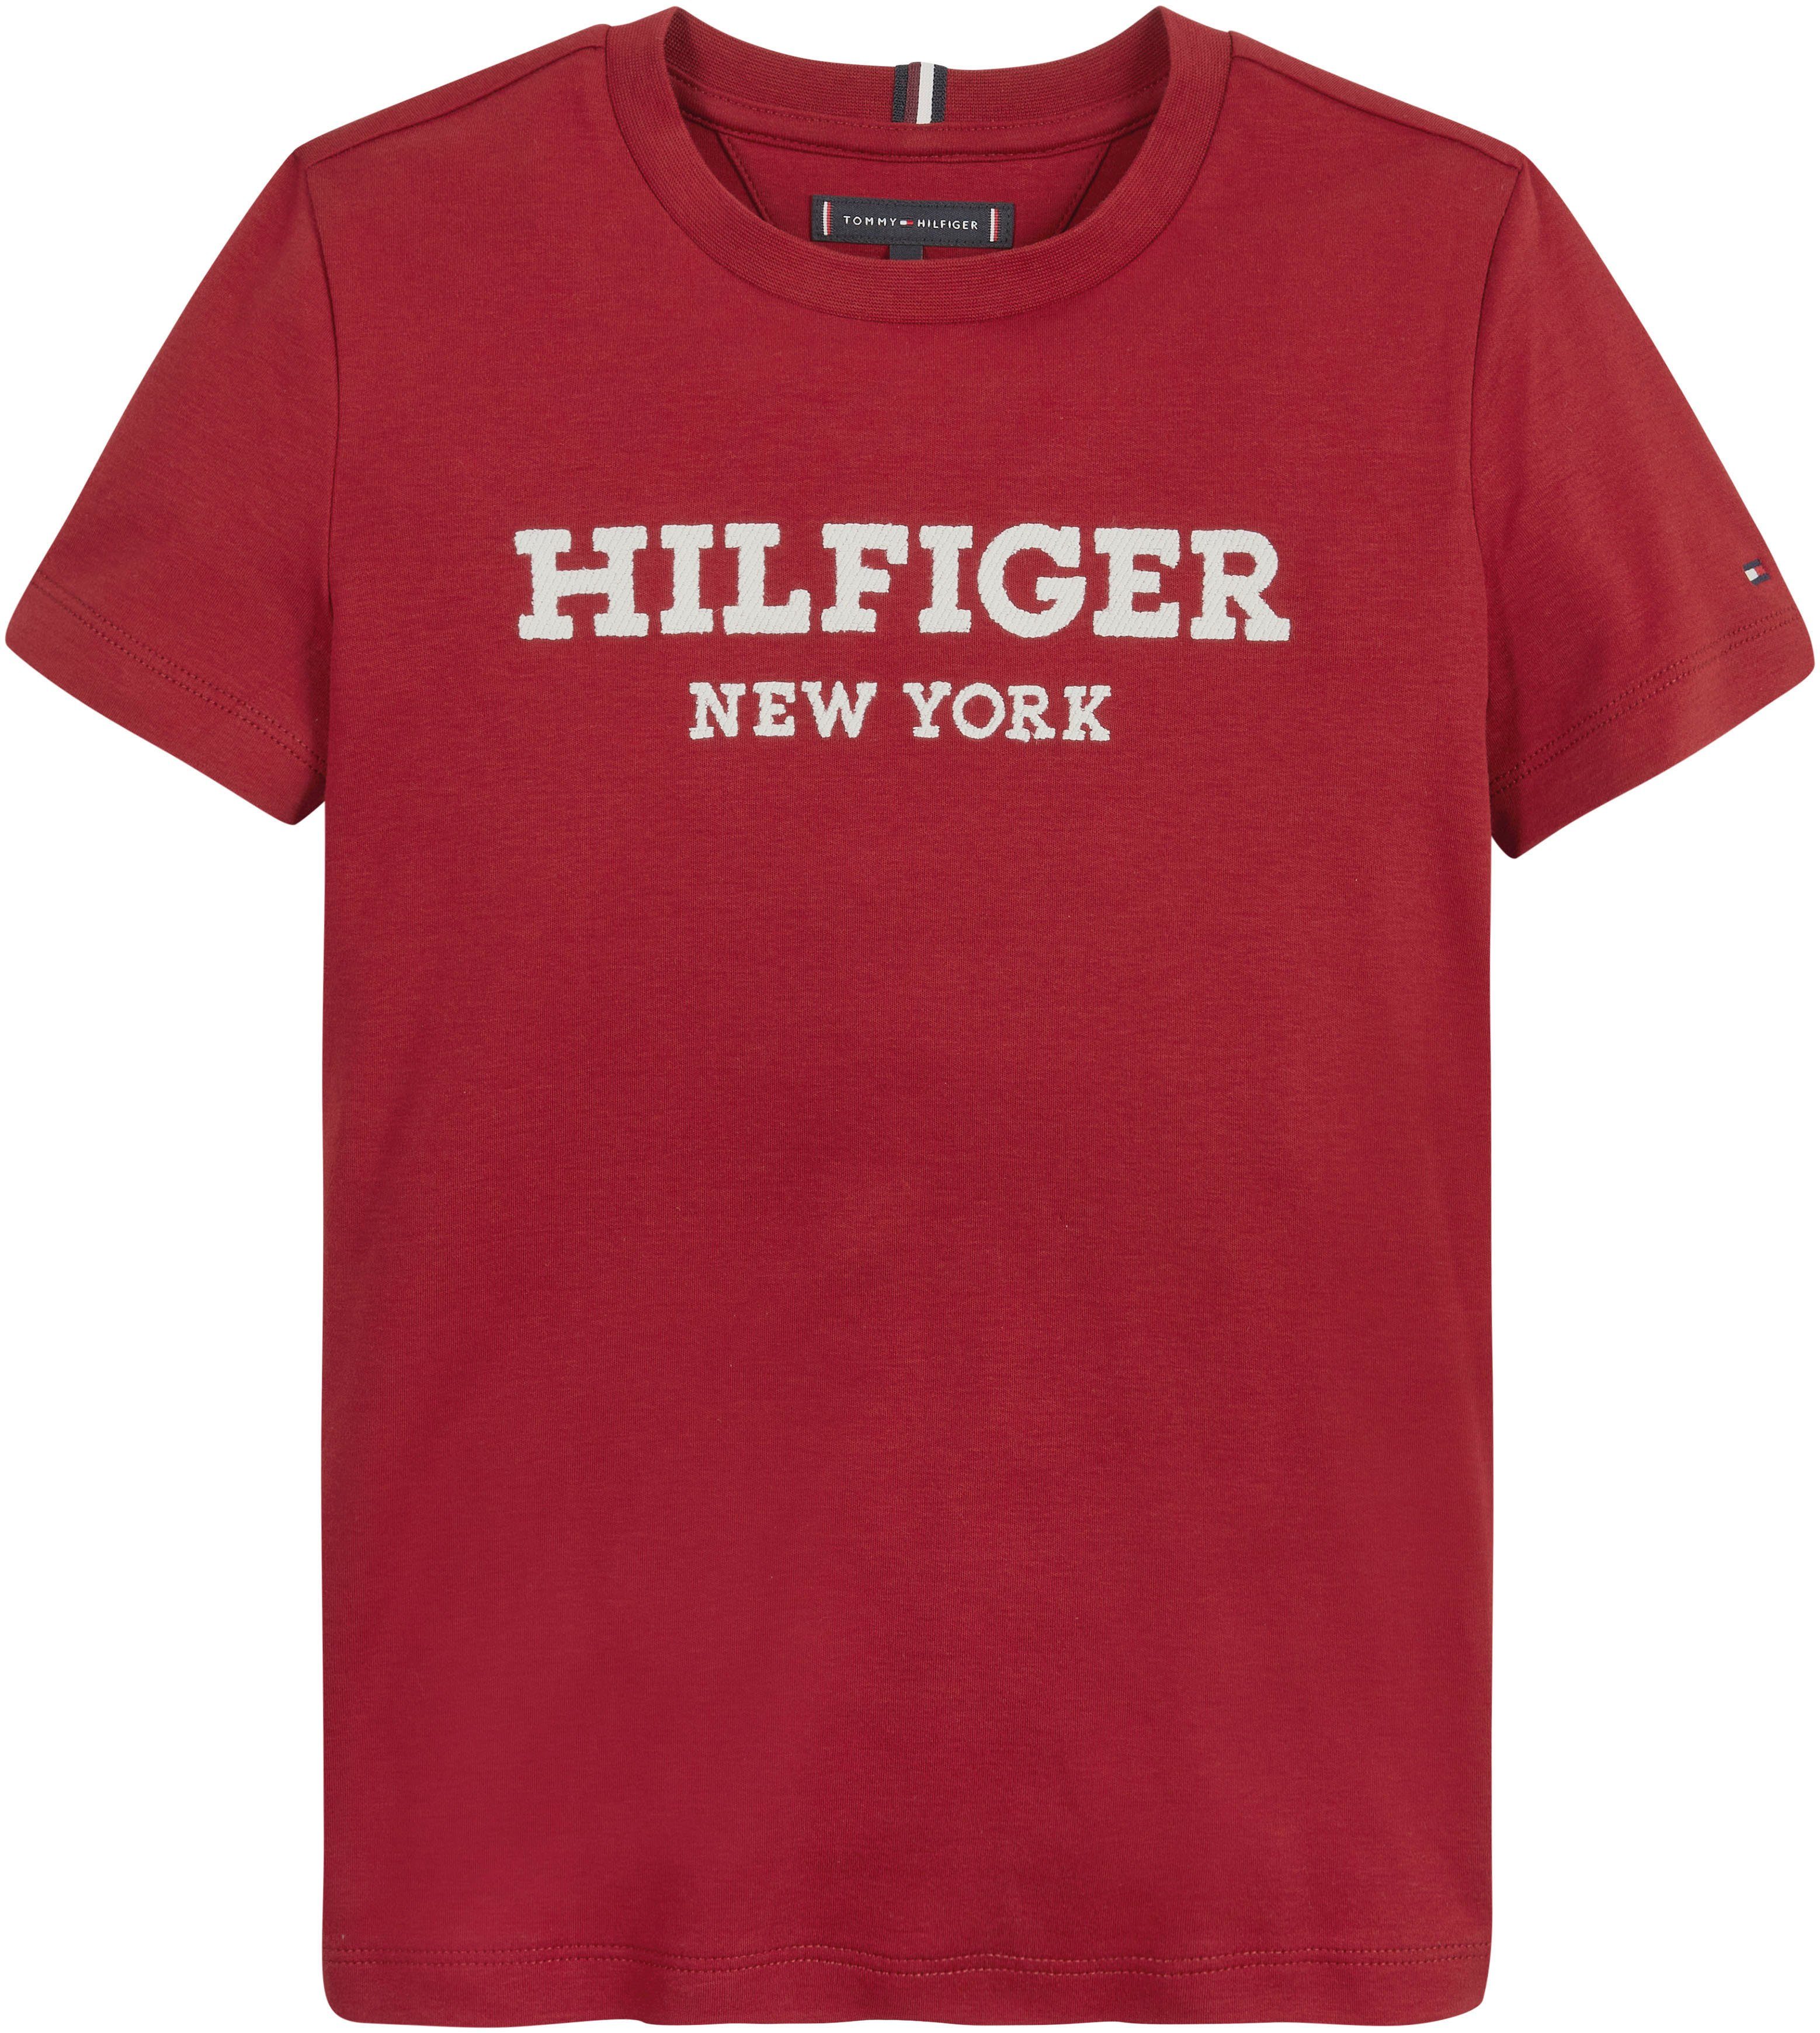 Hilfiger S/S Tommy Hilfiger Statement LOGO Rouge T-Shirt Print mit HILFIGER TEE